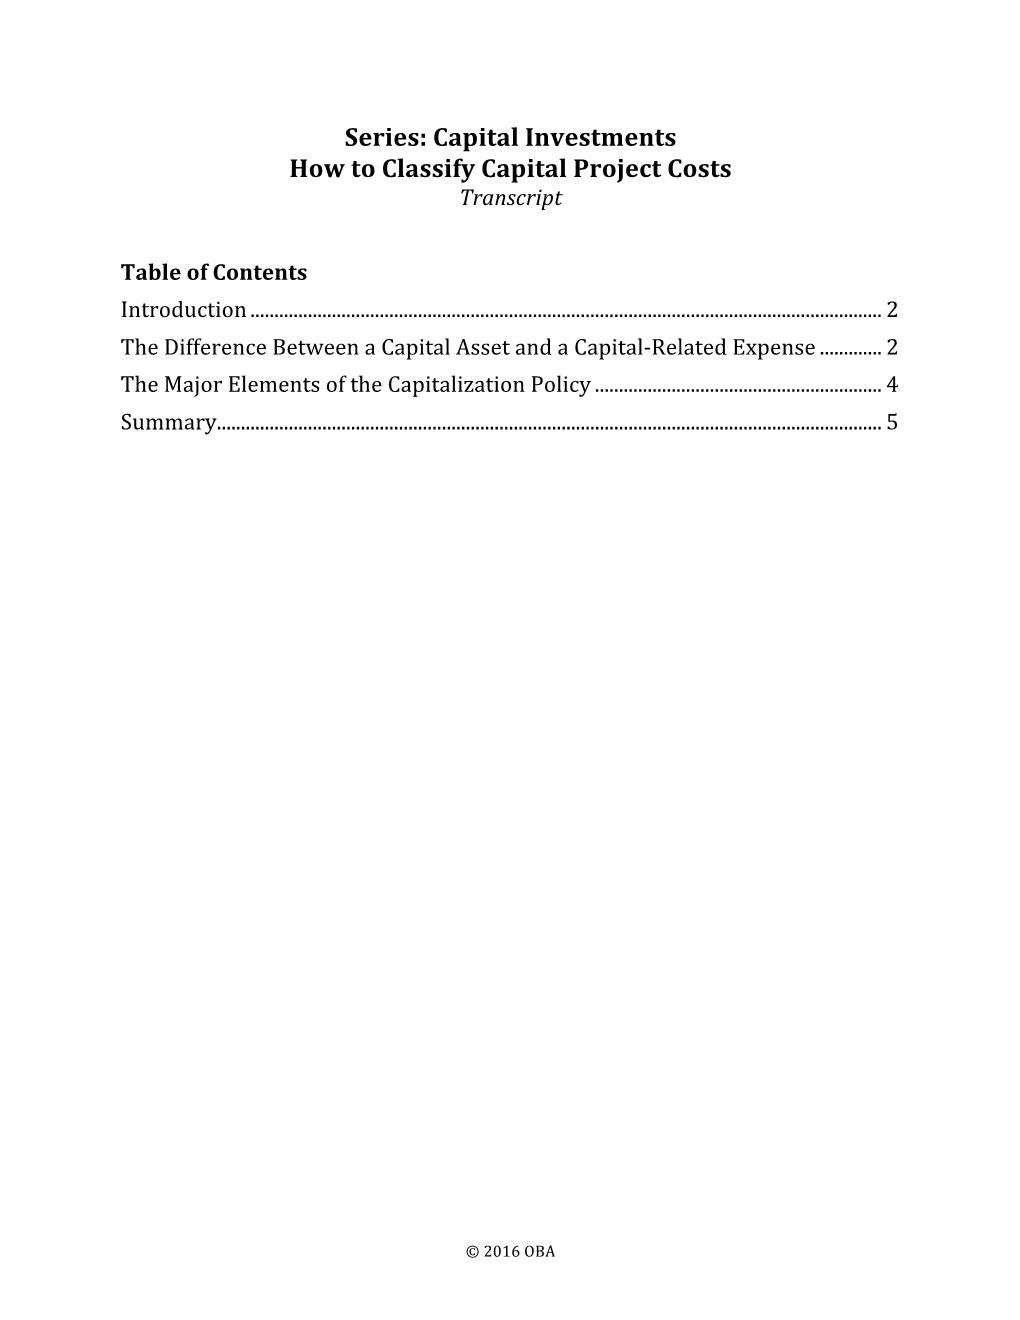 2 Classify Capital Cost Transcript